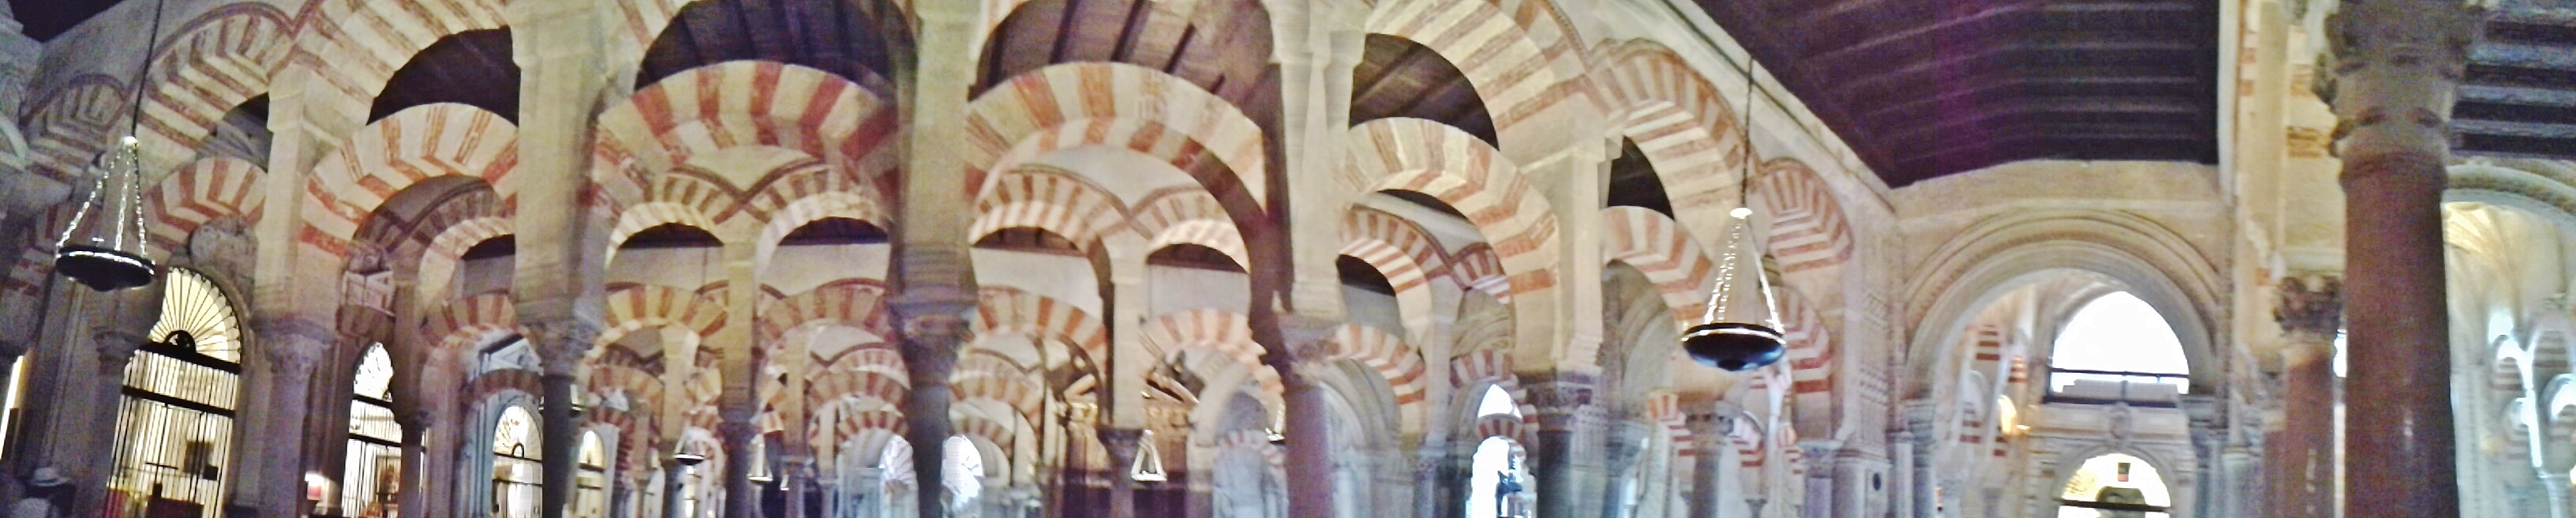 Foto: Mezquita - Córdoba (Andalucía), España